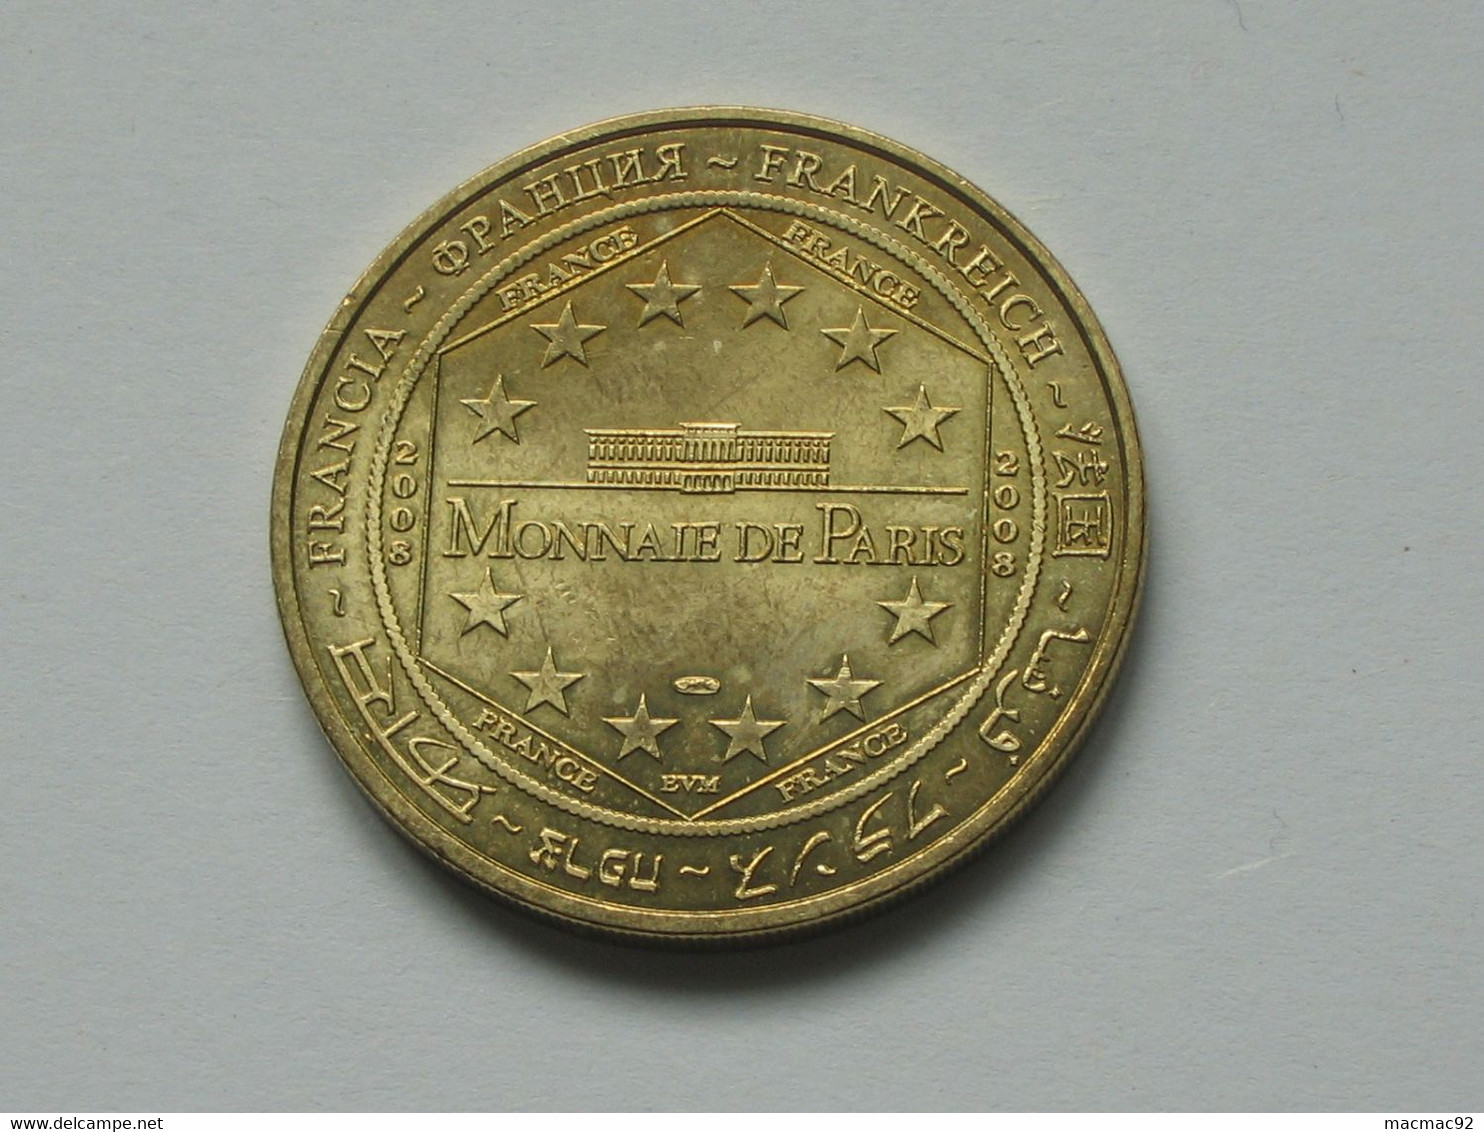 Monnaie De Paris  - CITE DU TRAIN - MULHOUSE - LOCOMOTIVE 241 A1 EST (1925)  - 2008  **** EN ACHAT IMMEDIAT  **** - 2008